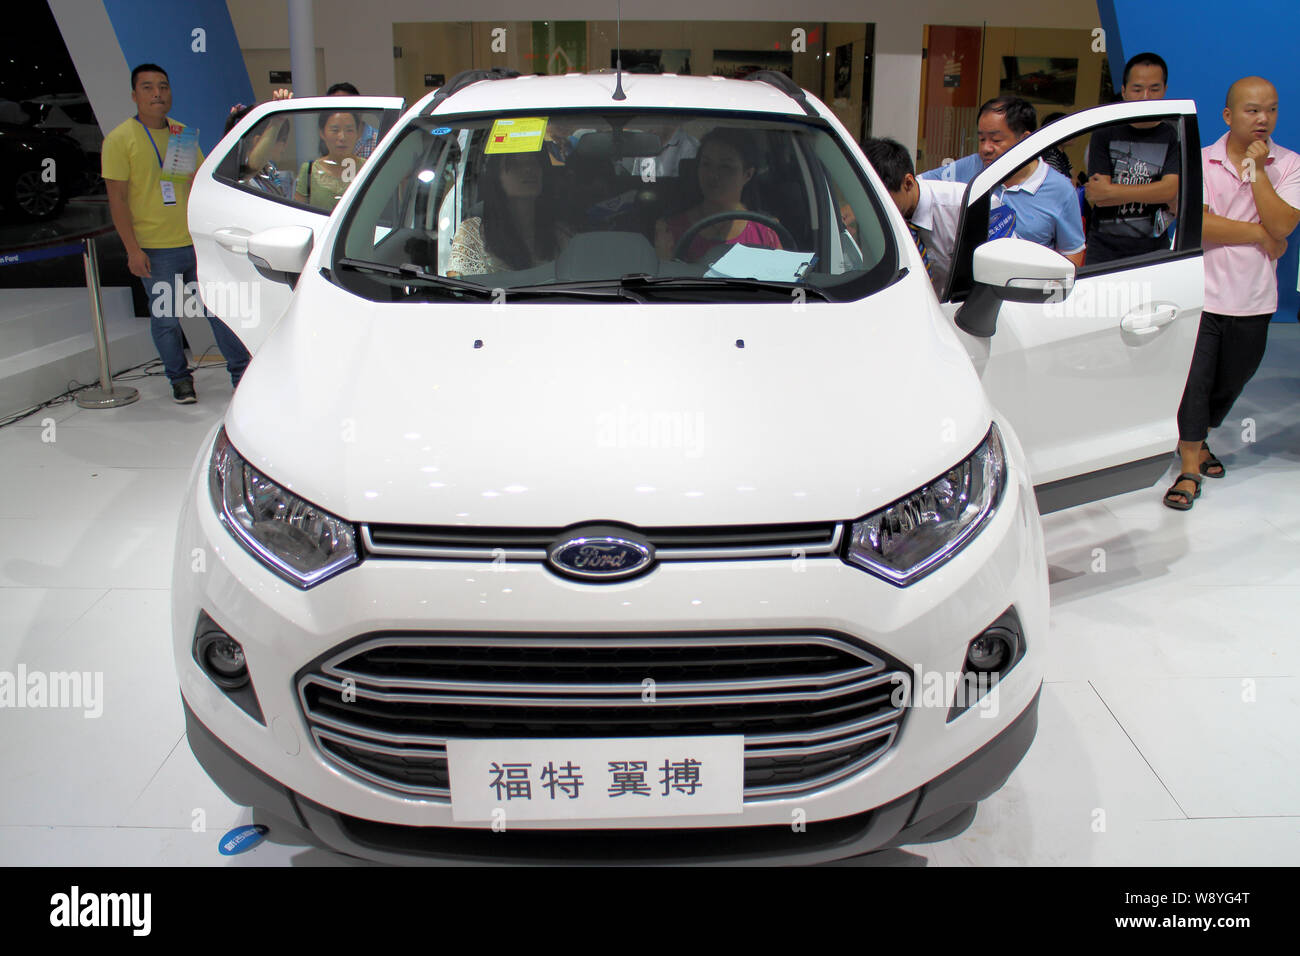 --FILE--visiteurs regarder ou essayer une Ford EcoSport lors d'une auto show à Fuzhou City, province du Fujian, Chine du sud-est, 1 octobre 2014. Ford Moto Banque D'Images